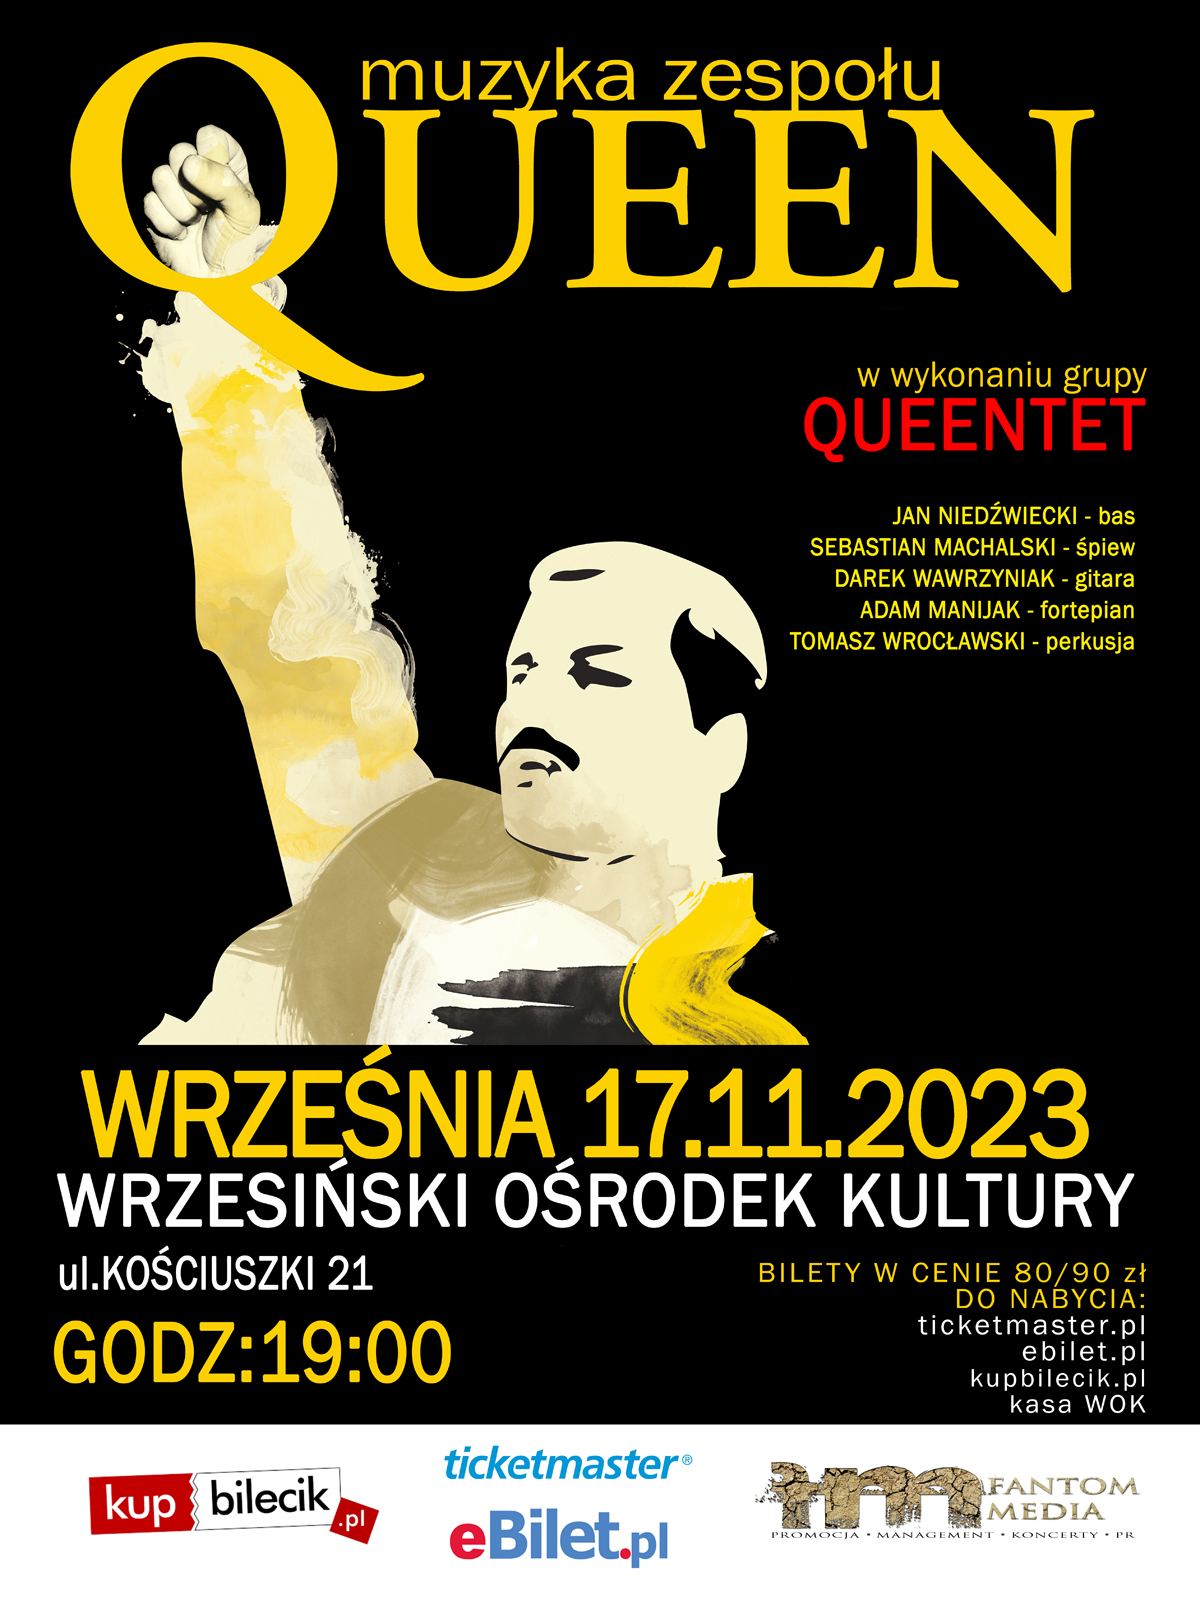 Plakat - muzeyk zespołu Queen